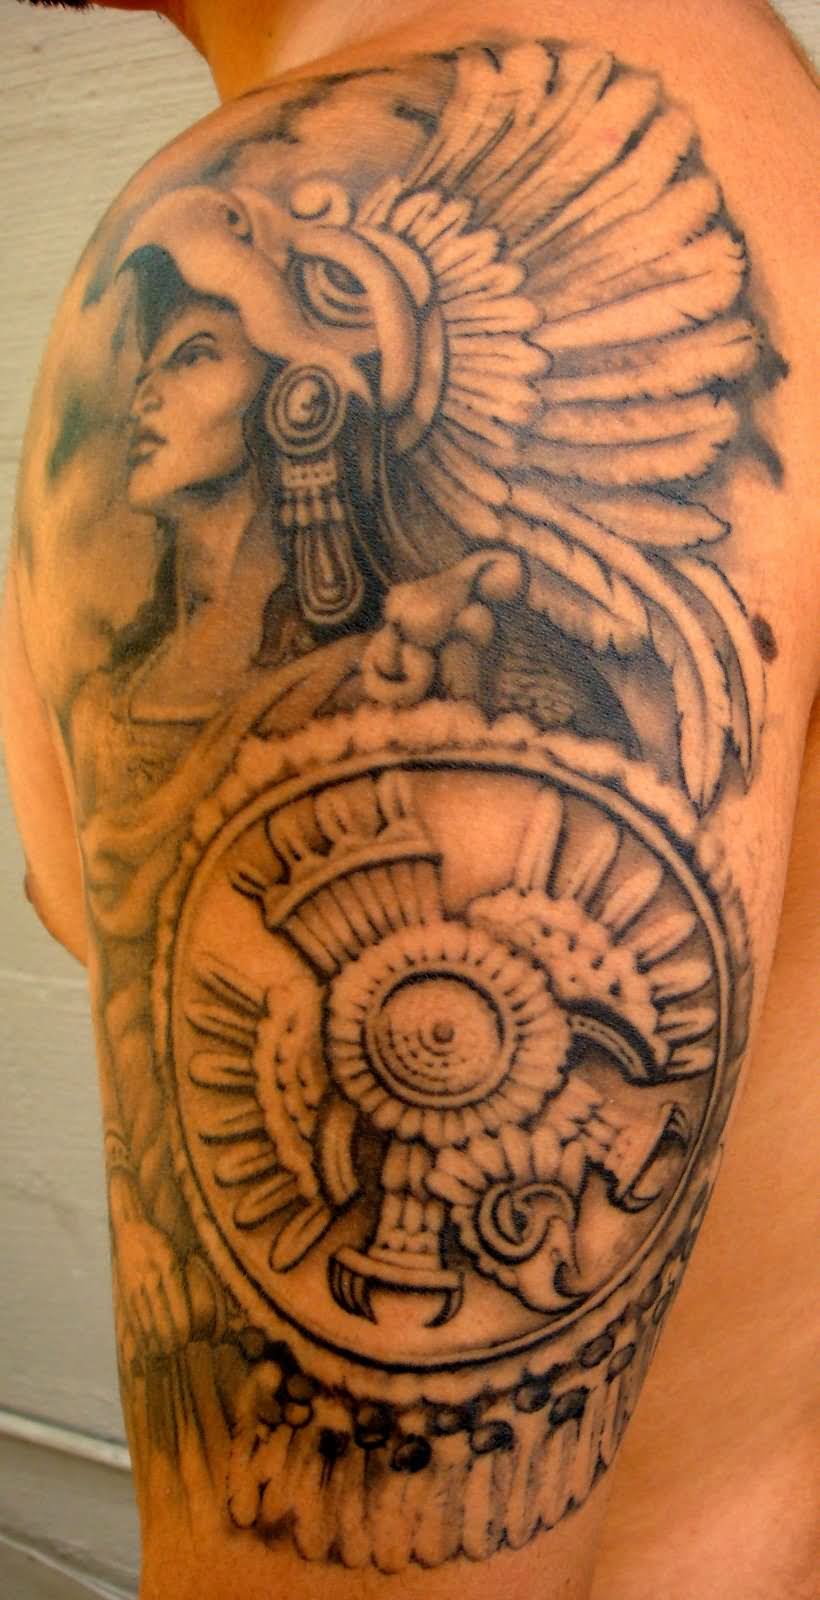 Colorful Aztec Tattoo Design